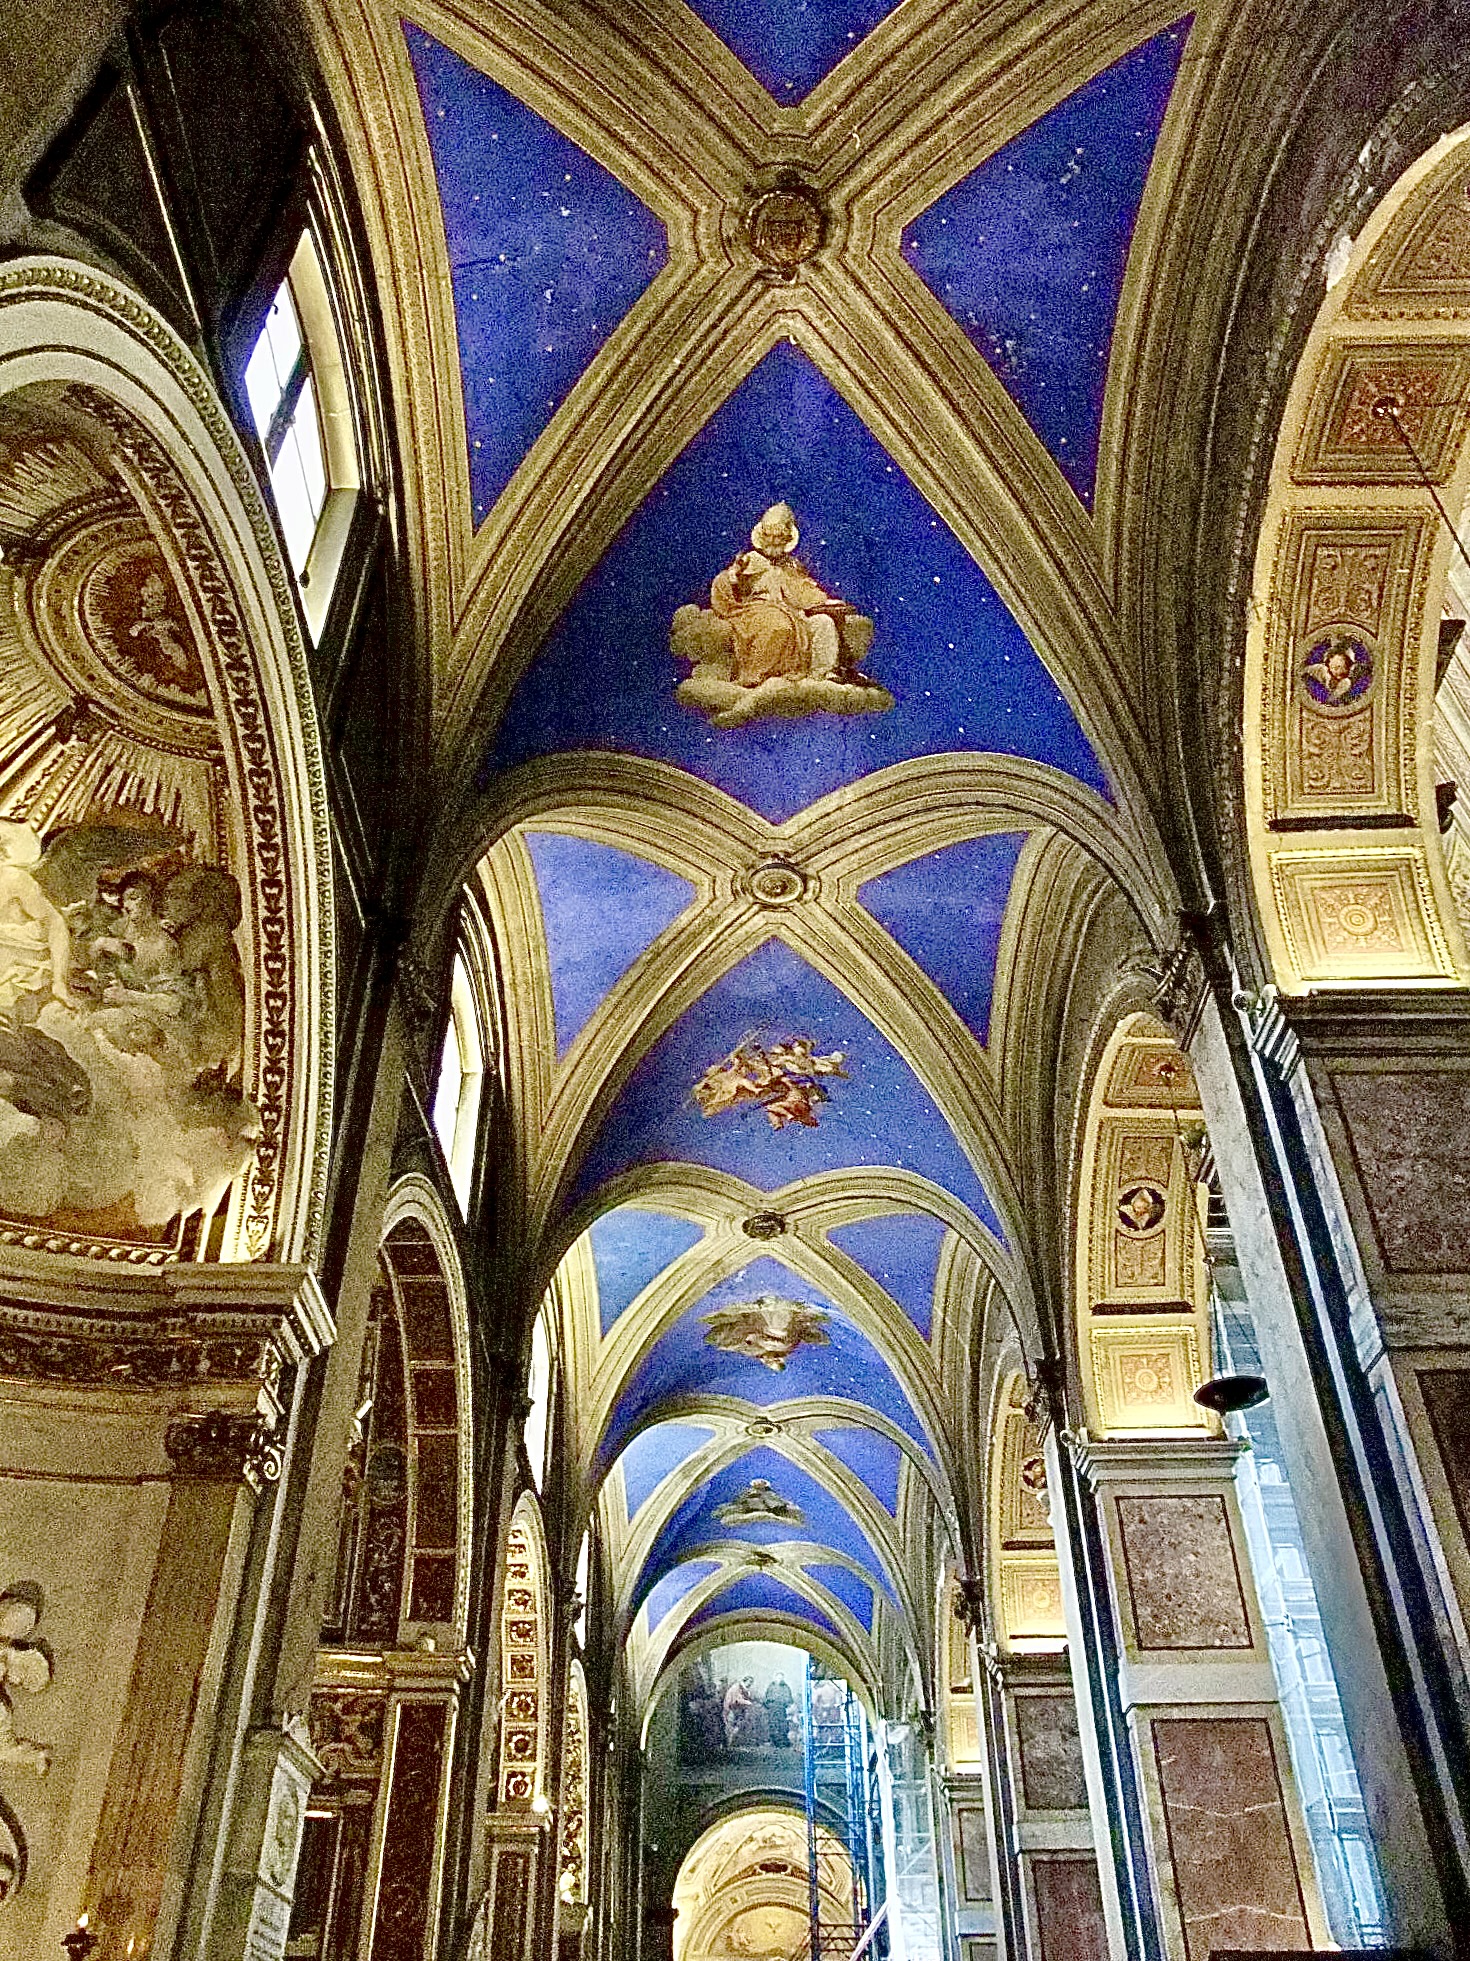  サン・タゴスティーノ教会天井